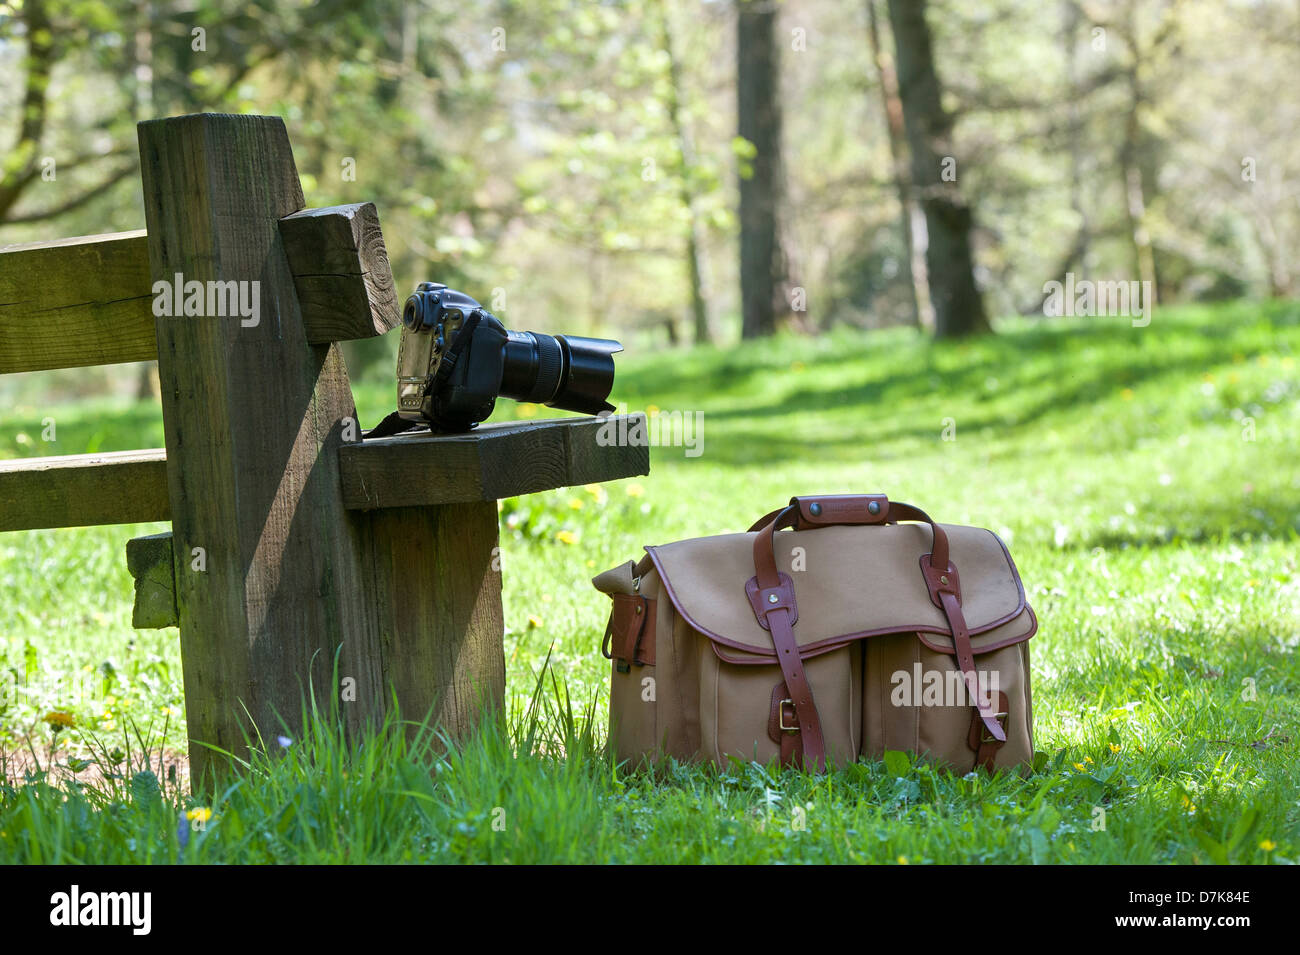 L'équipement et l'appareil photo Nikon sac sur un siège dans un bois Anglais Banque D'Images